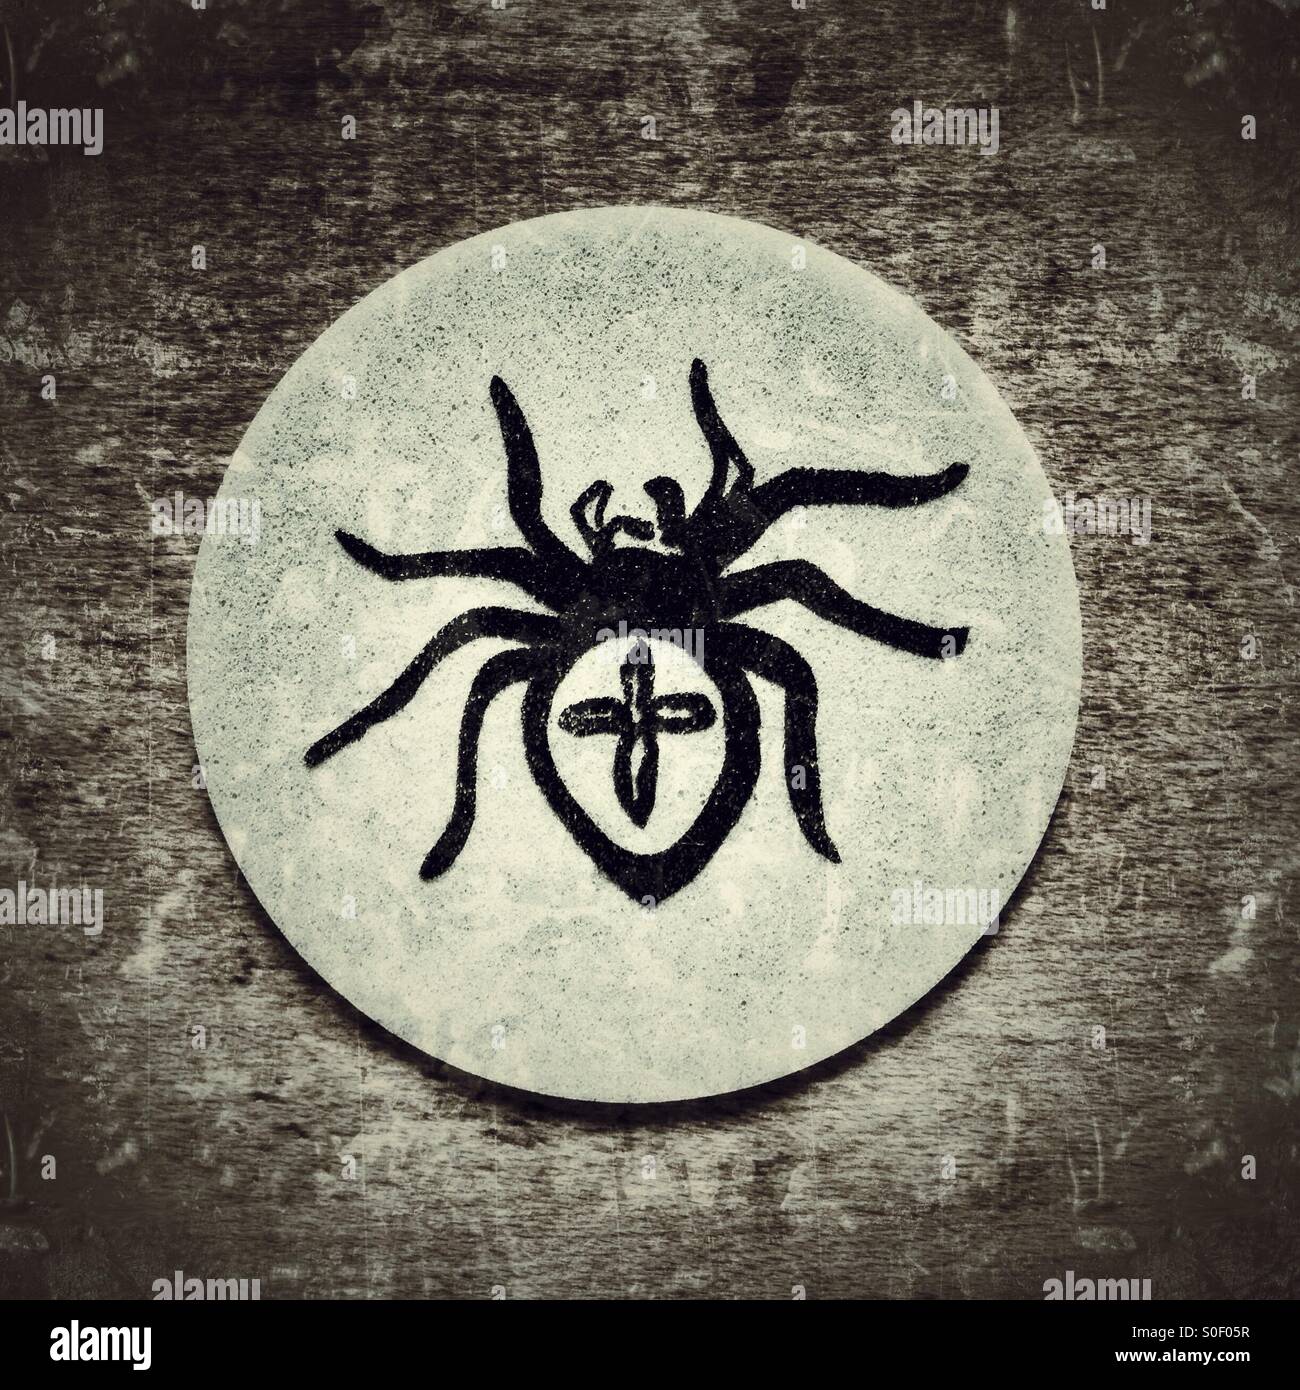 Spider tattoo immagini e fotografie stock ad alta risoluzione - Alamy